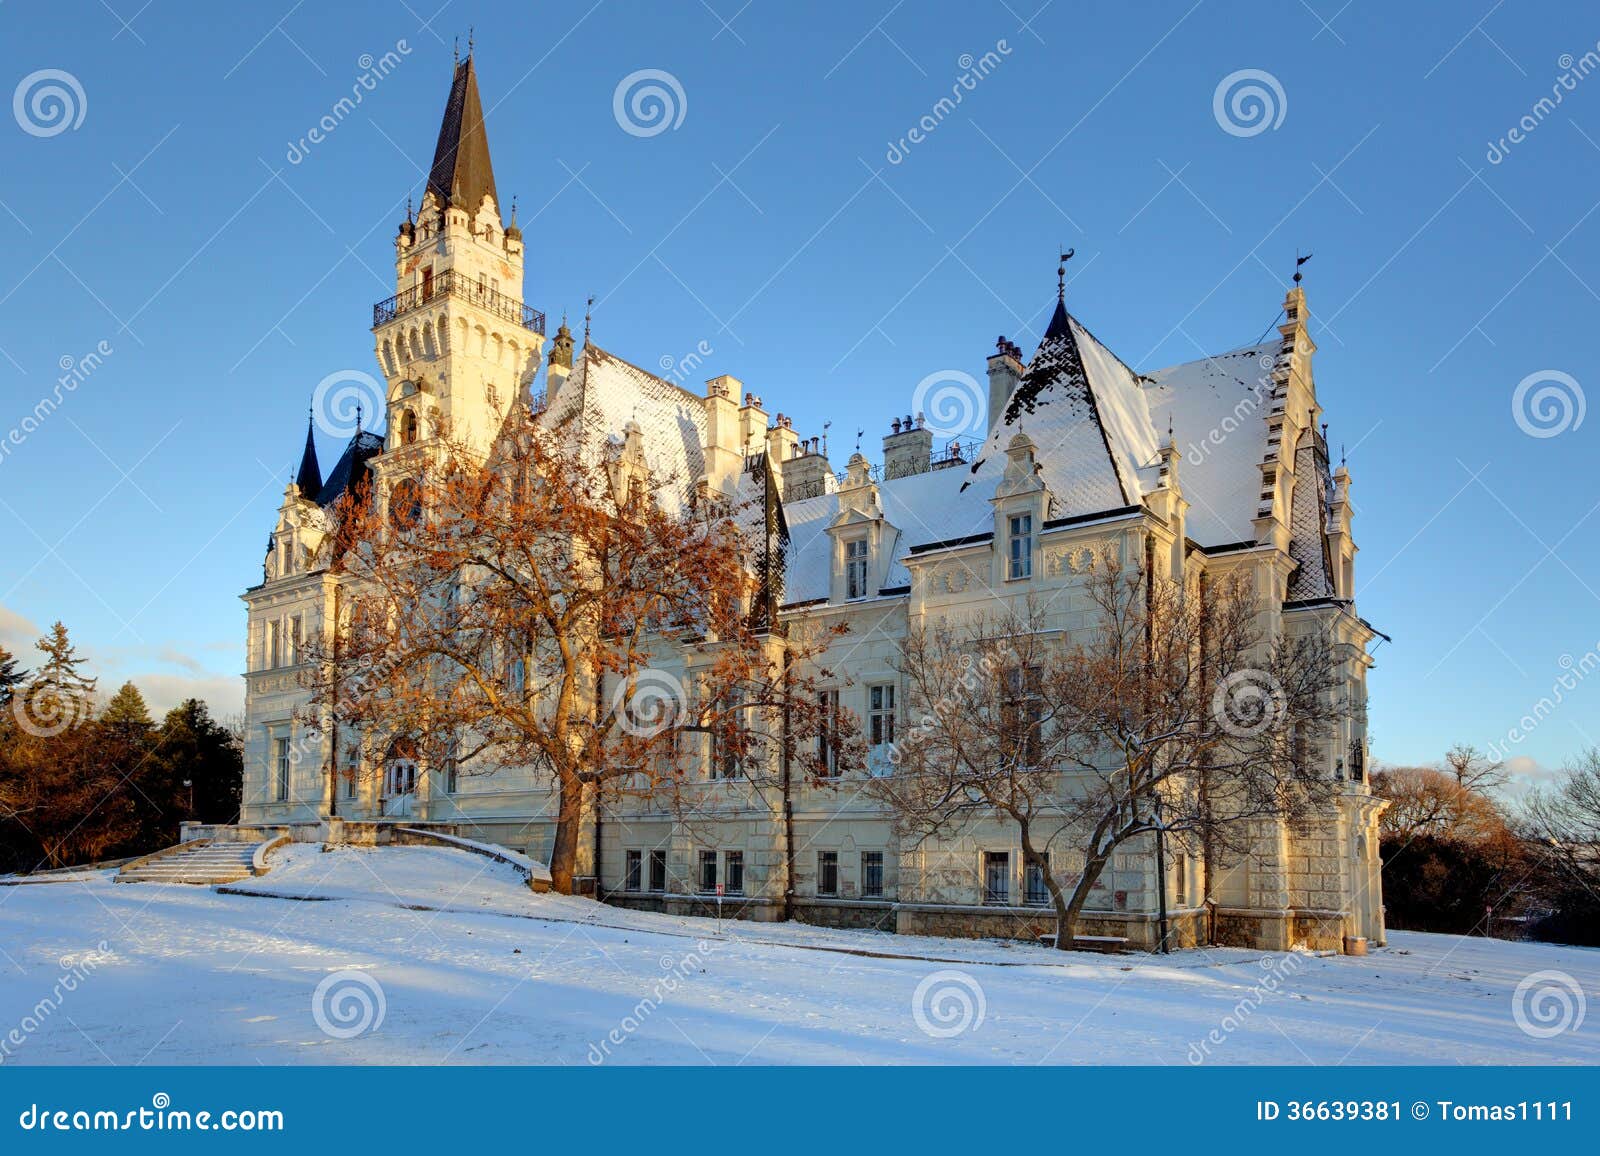 桌布 斯洛伐克，山，樹木，雲，雪，冬天 5120x2880 UHD 5K 高清桌布, 圖片, 照片